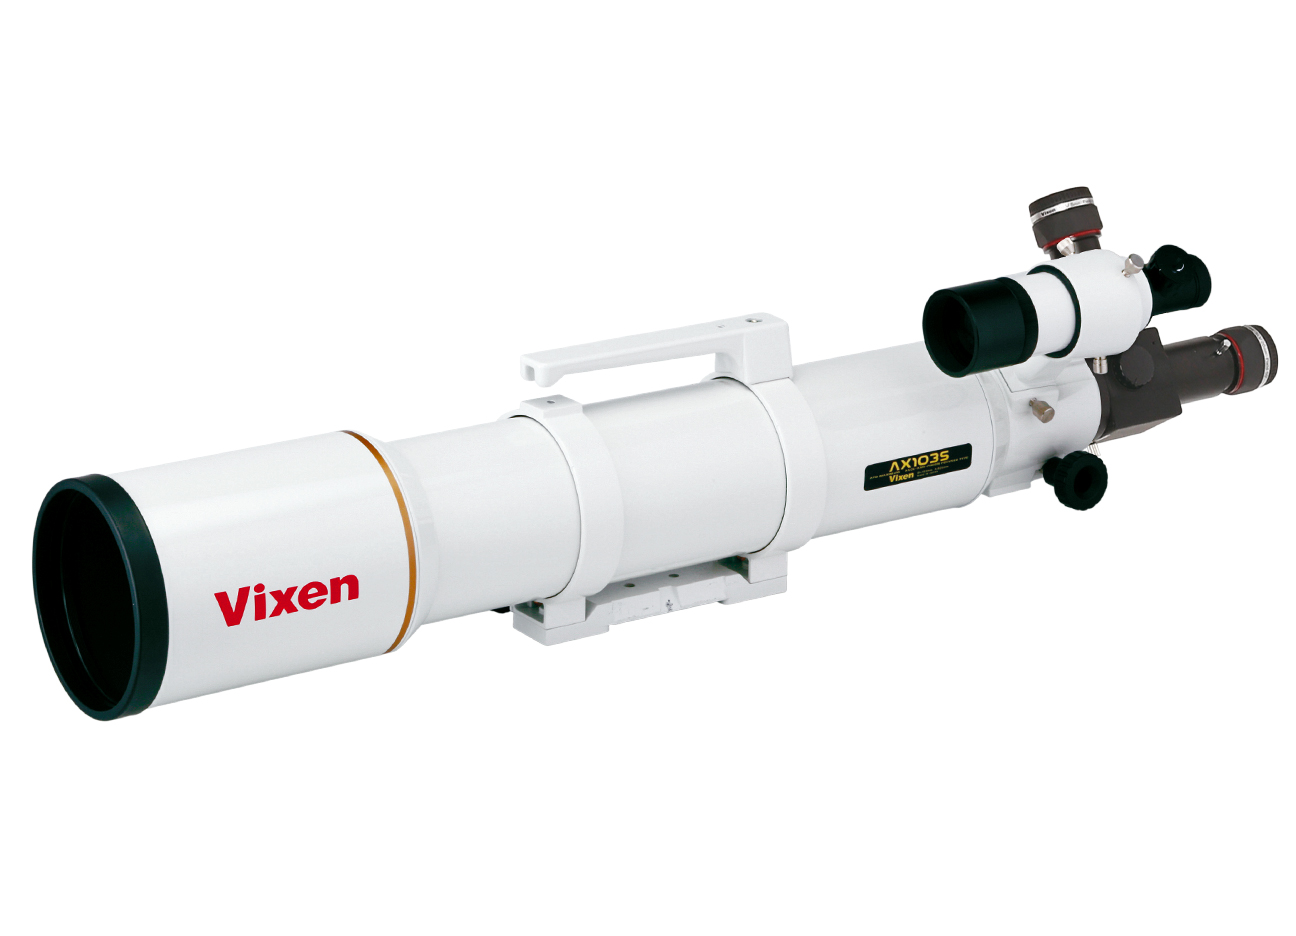 Rifrattore apocromatico Vixen AX103S- tubo ottico